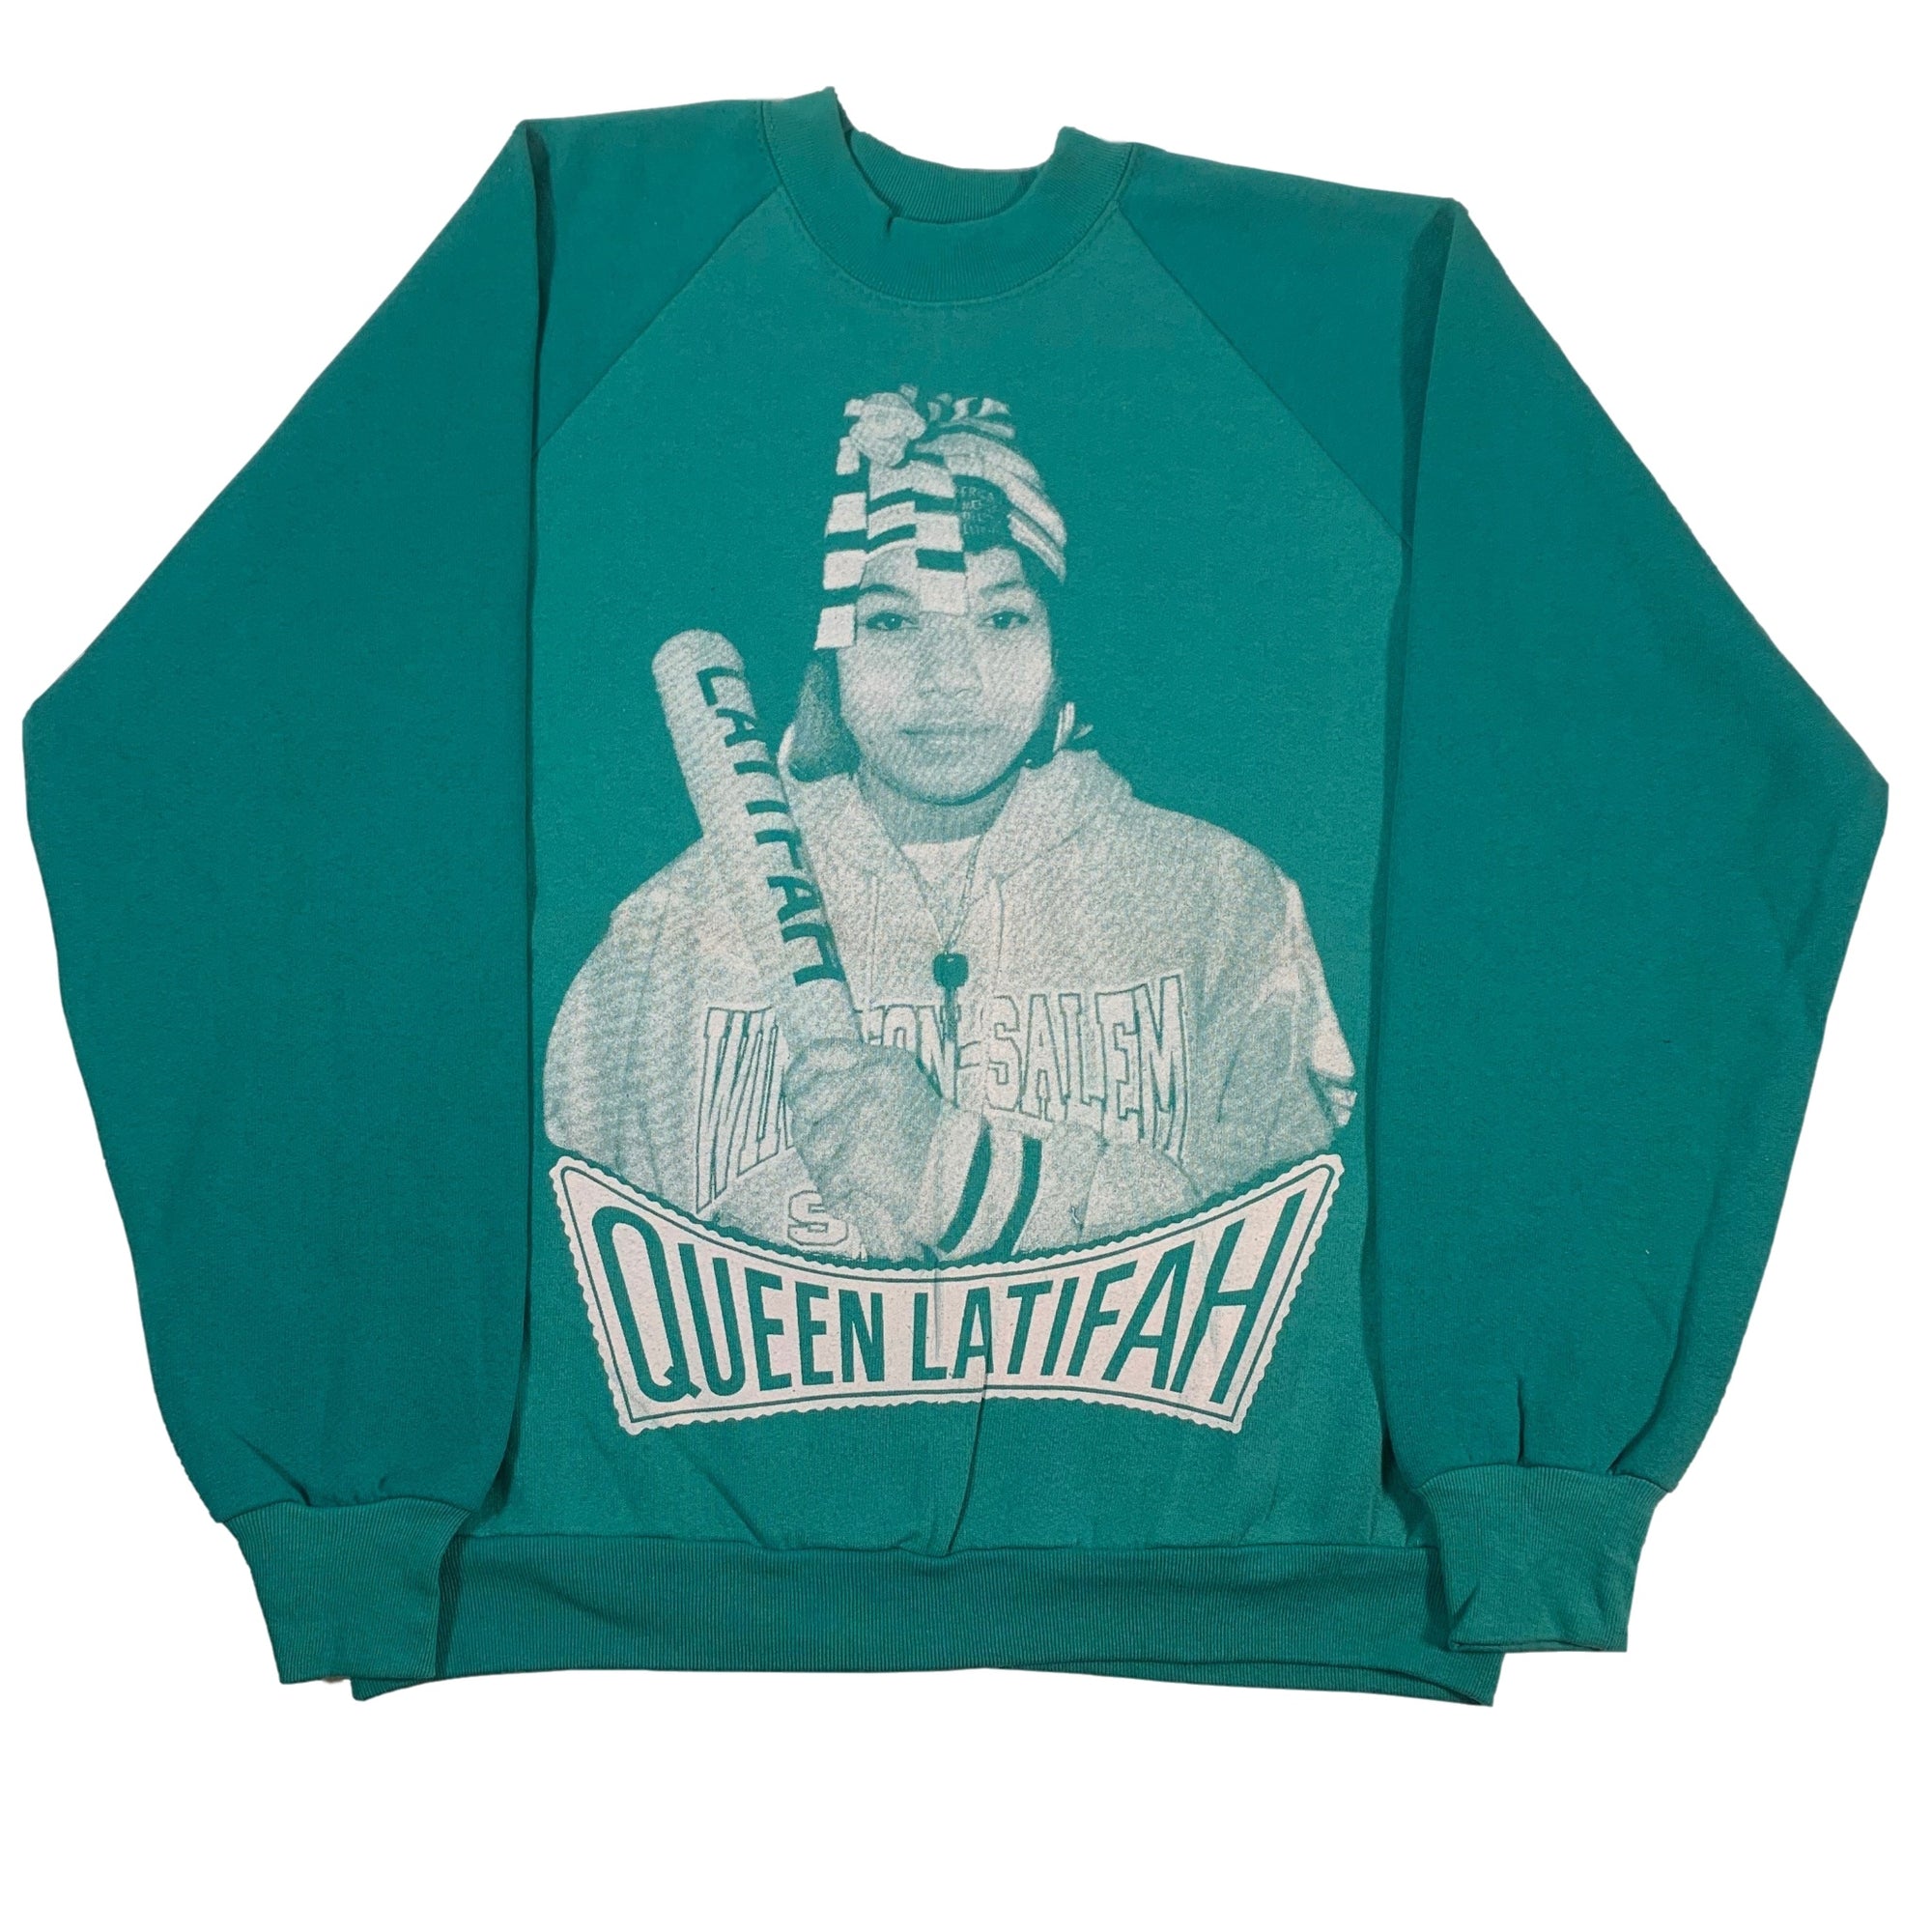 Vintage Queen Latifah "Queen" Crewneck Sweatshirt - jointcustodydc